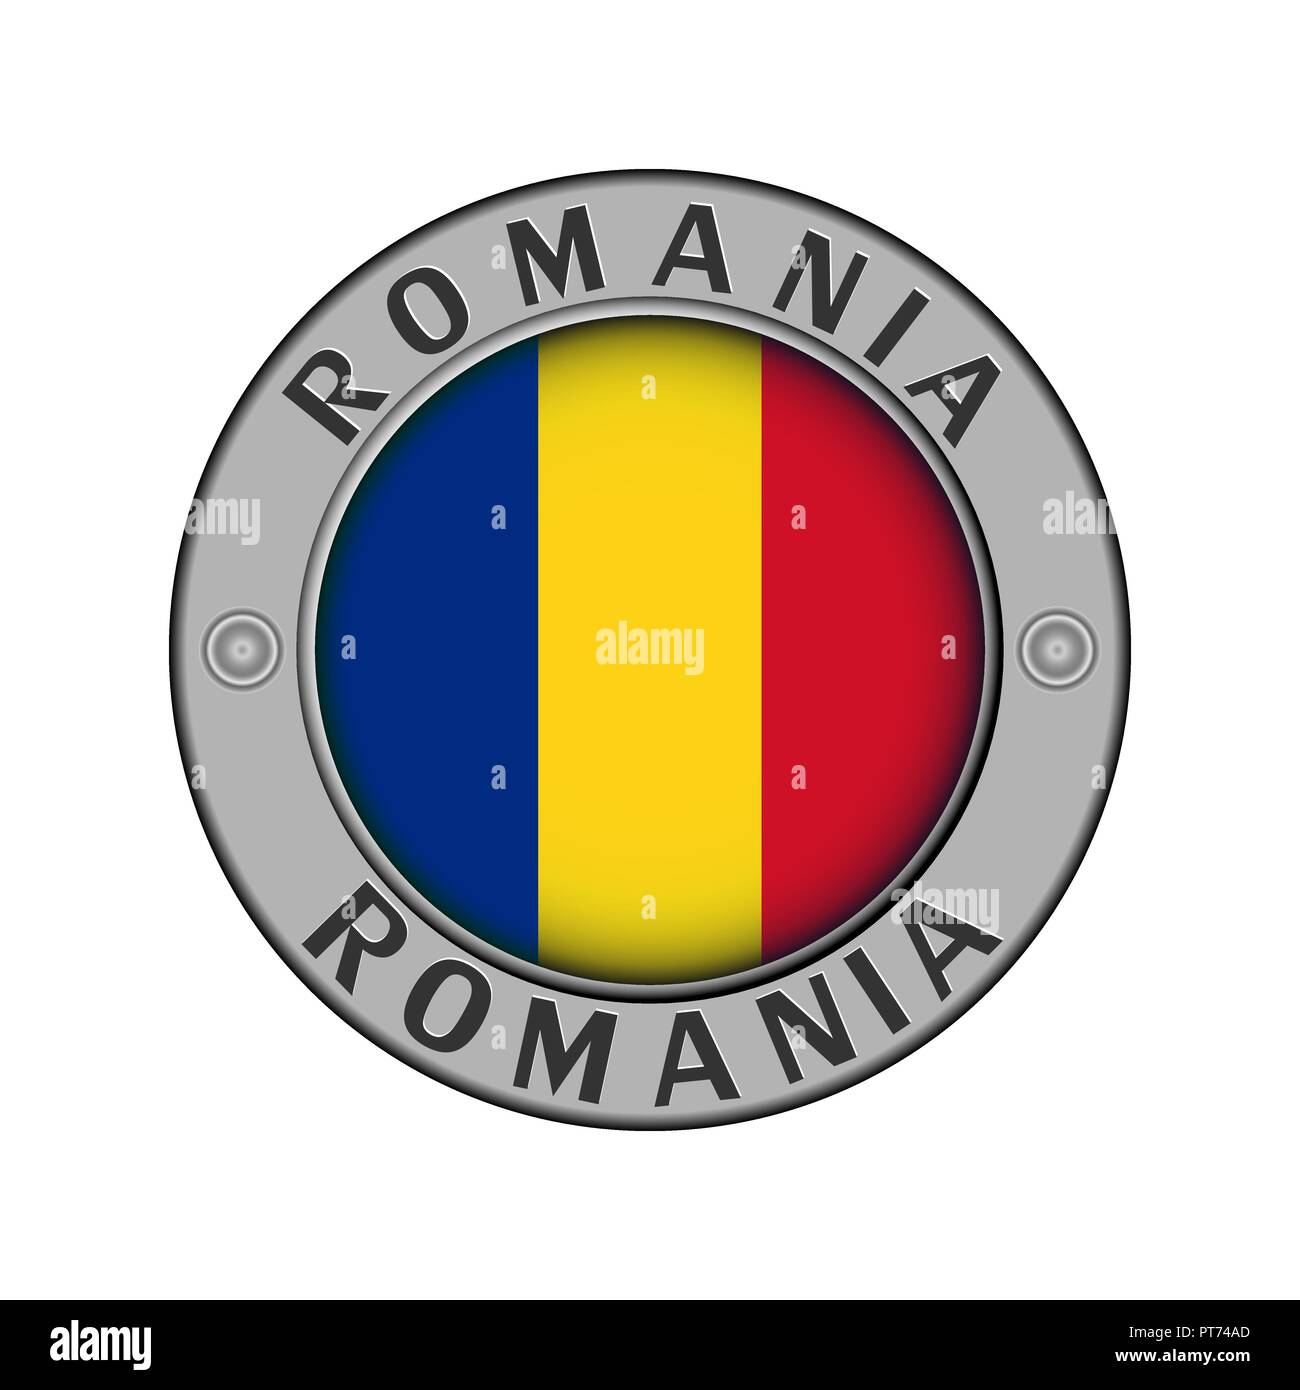 Rotondo di metallo medaglione con il nome del paese di Romania e un indicatore rotondo nel centro Illustrazione Vettoriale